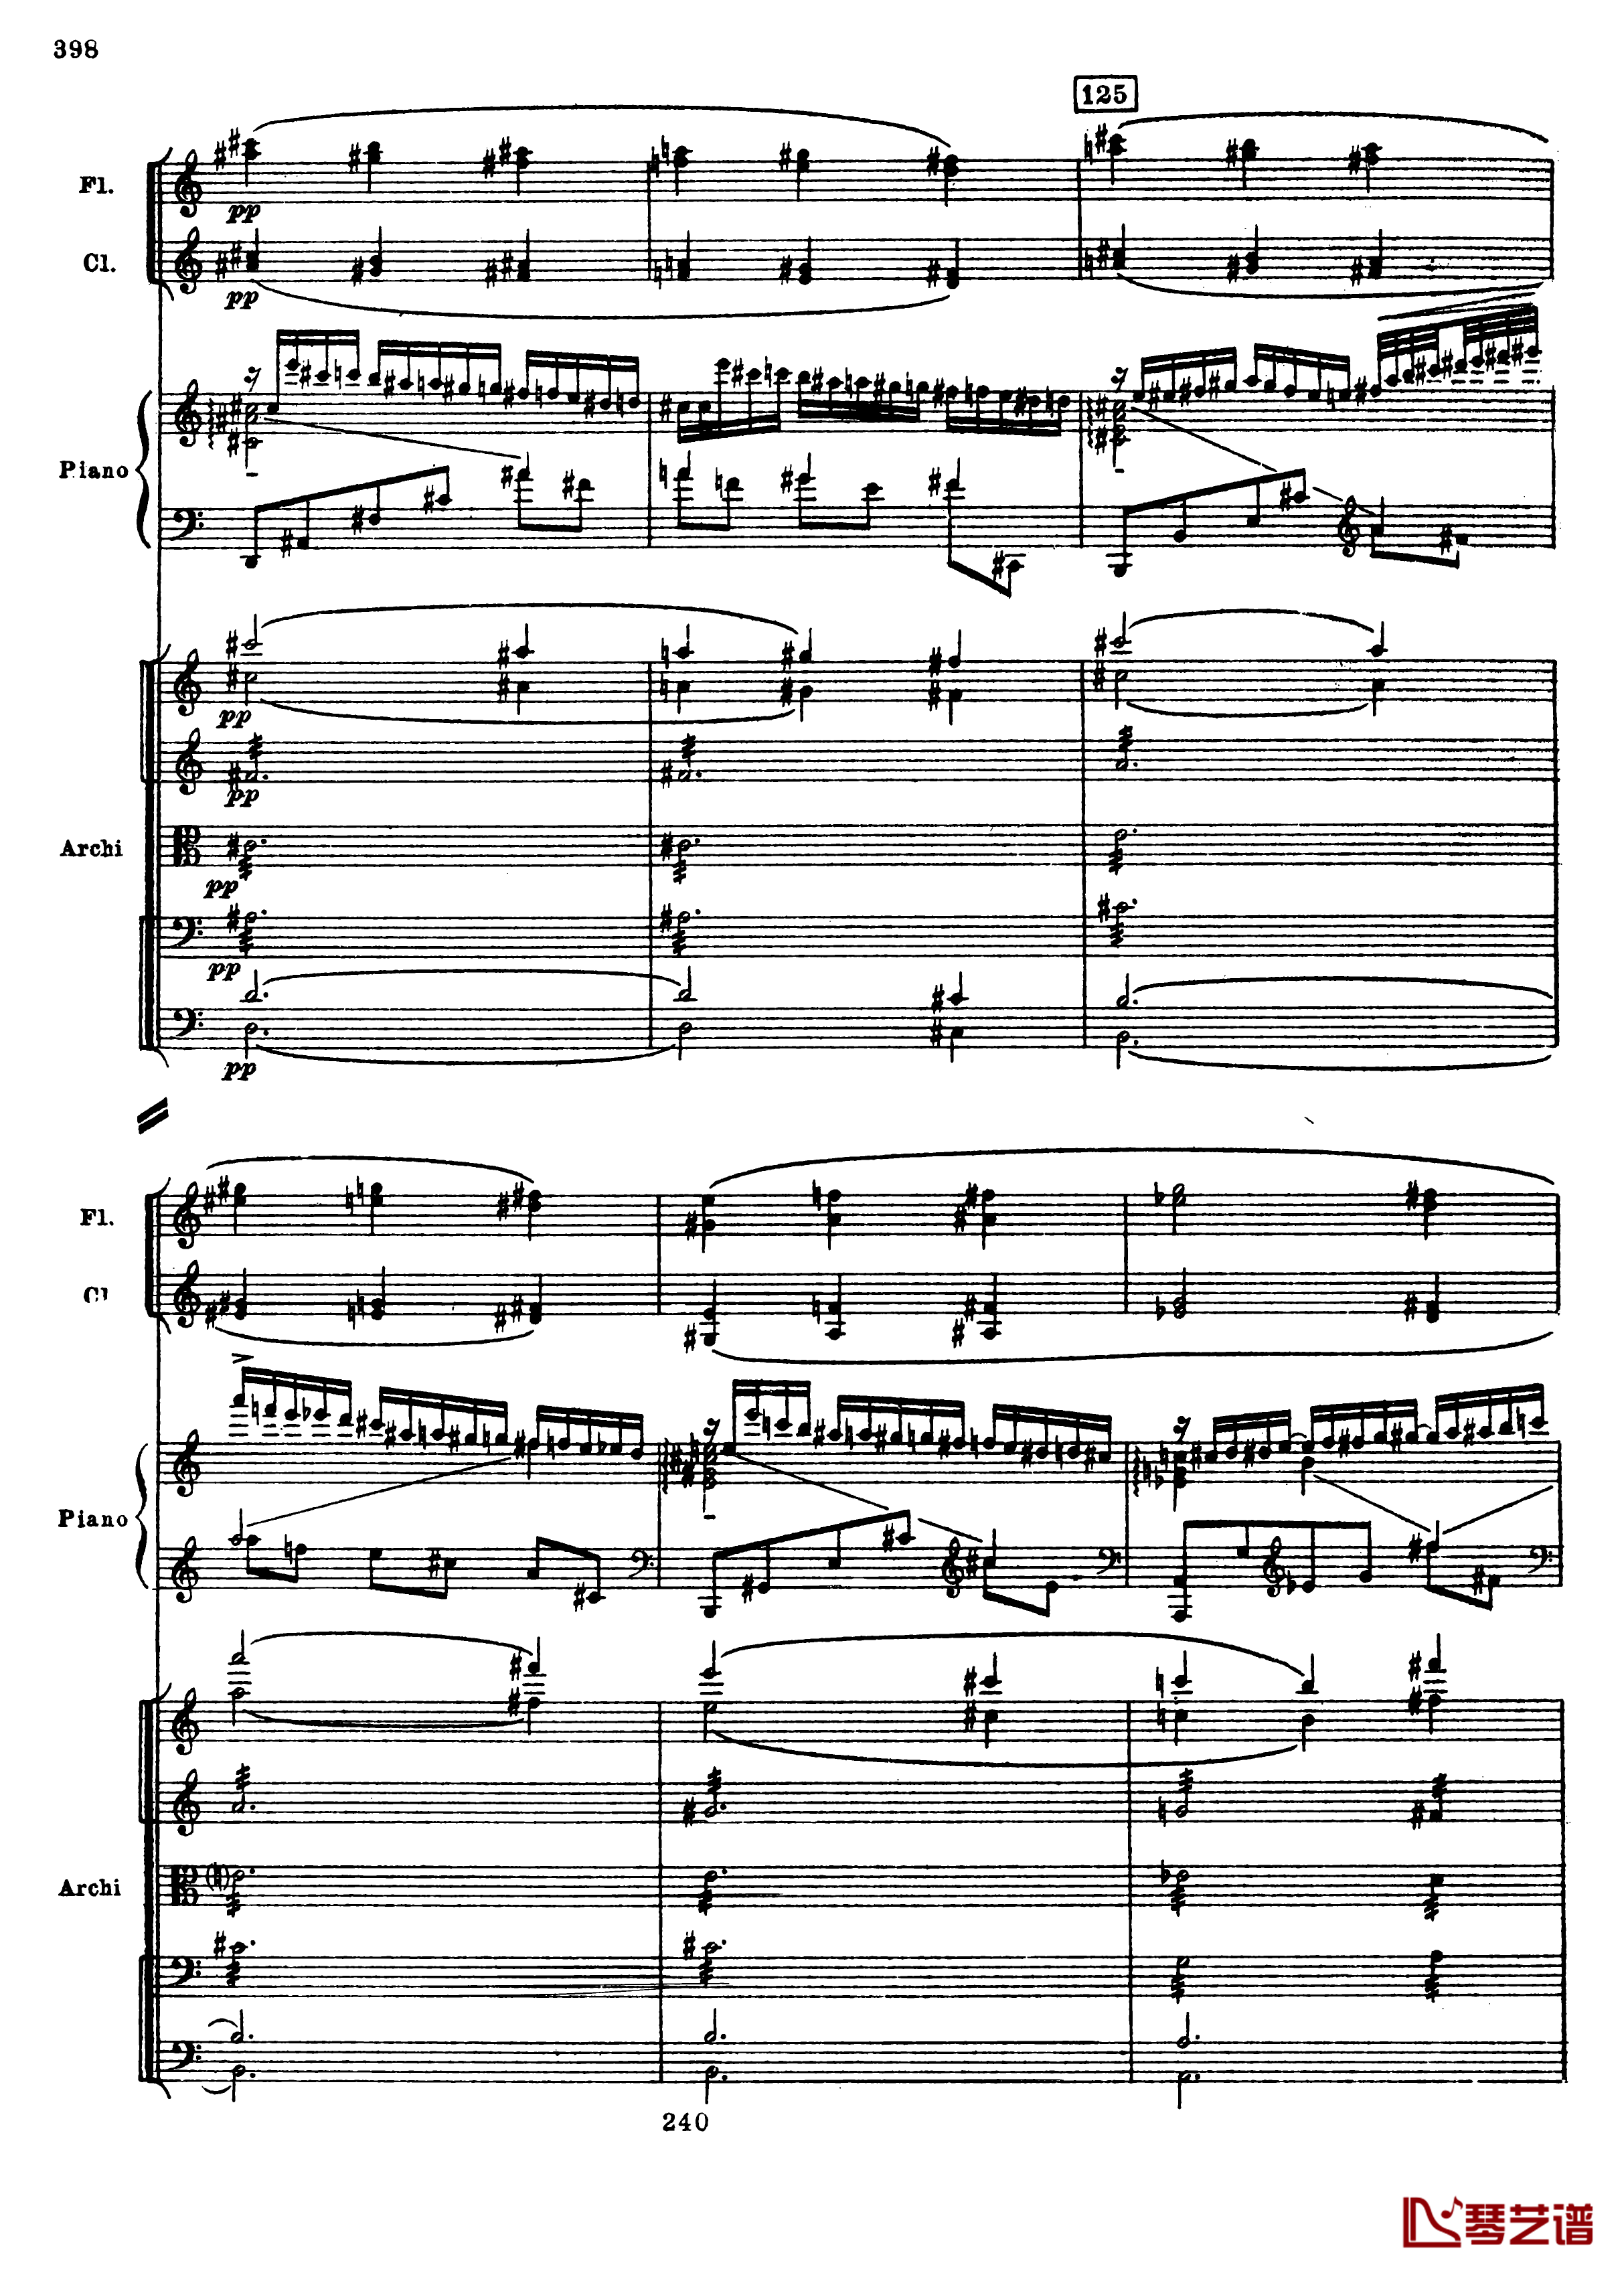 普罗科菲耶夫第三钢琴协奏曲钢琴谱-总谱-普罗科非耶夫130